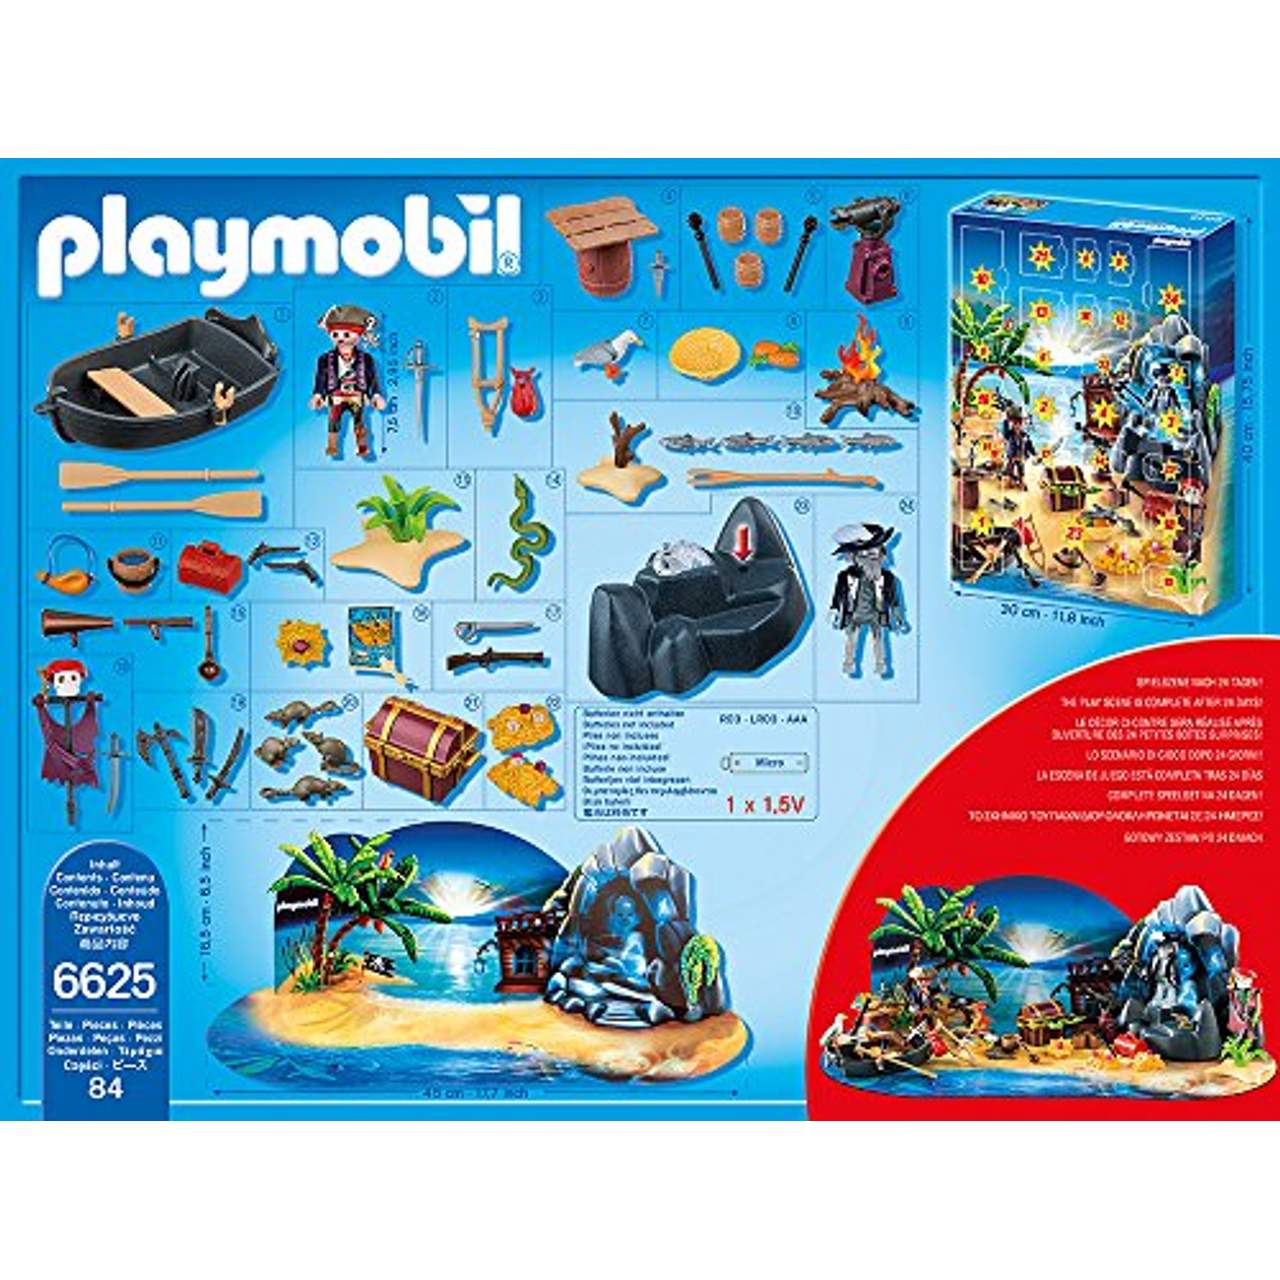 Playmobil 6625 Adventskalender Geheimnisvolle Piratenschatzinsel